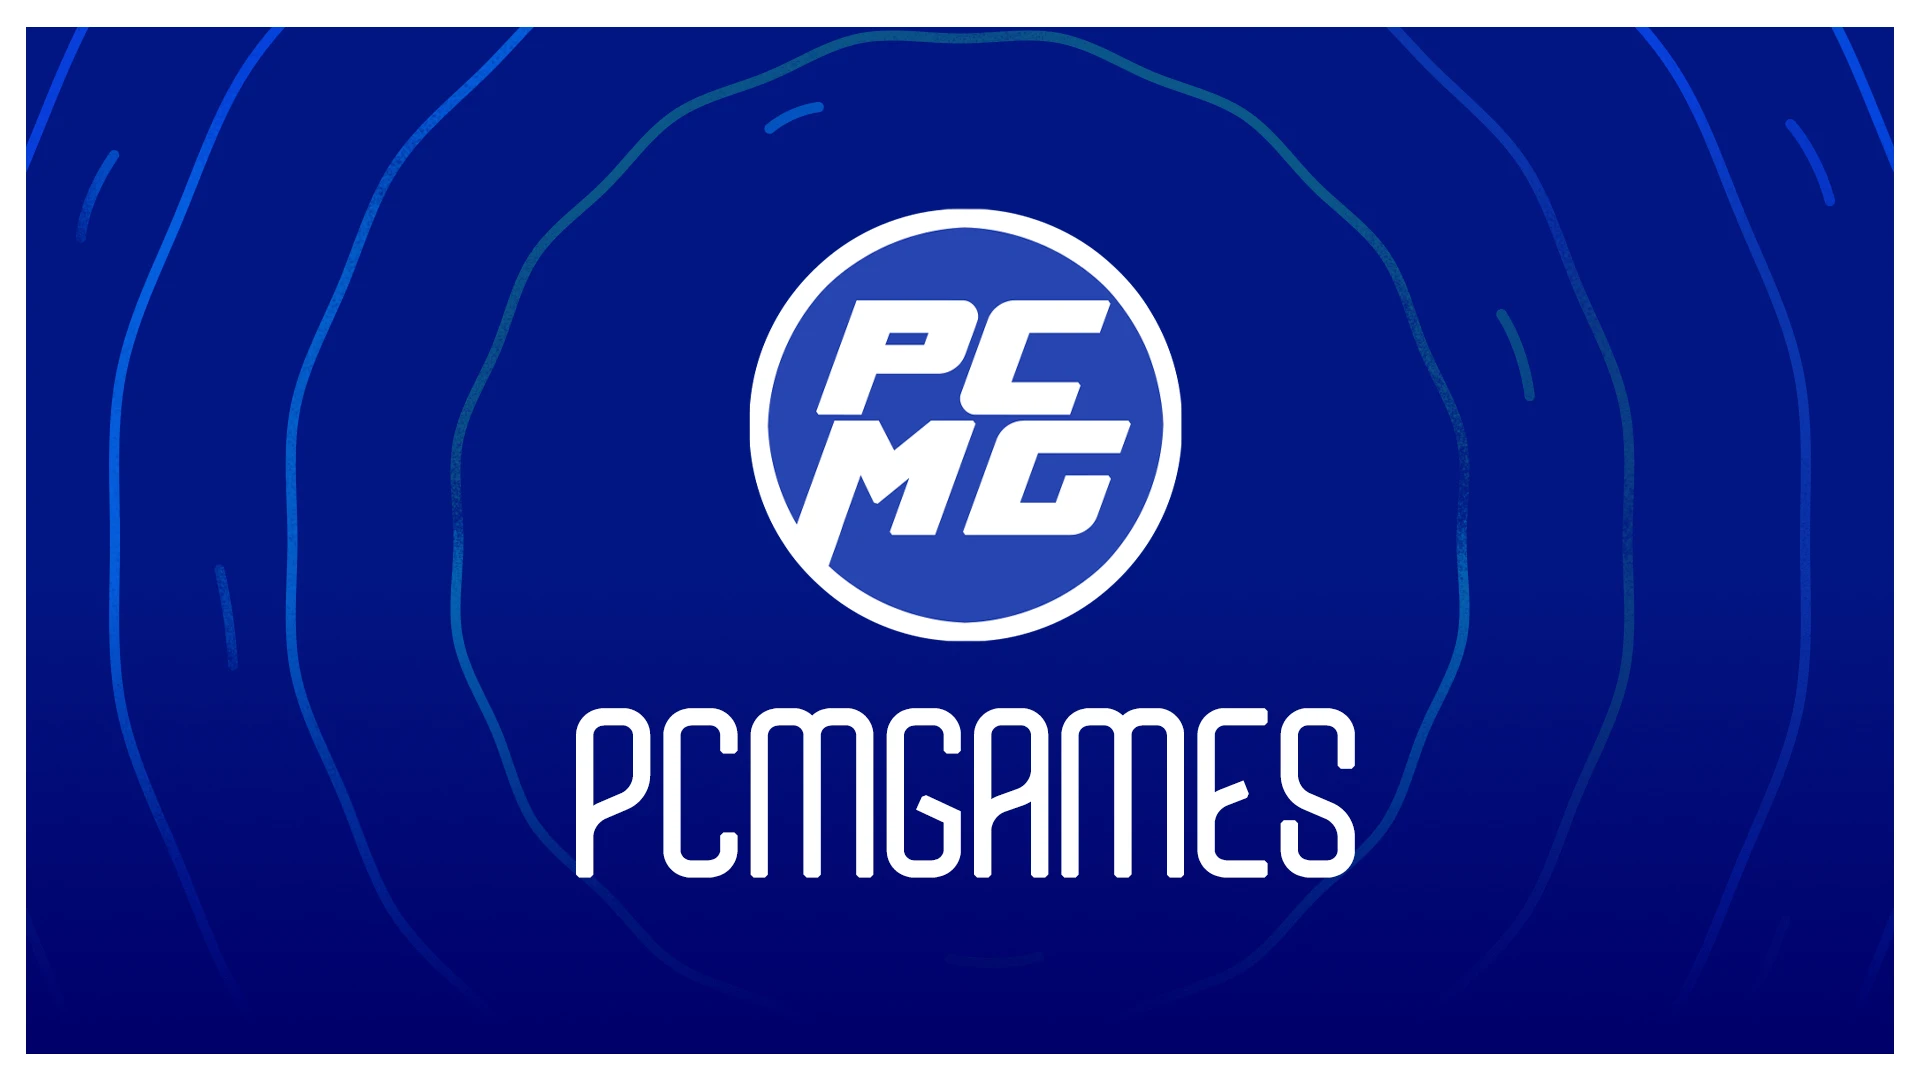 PCMGAMES